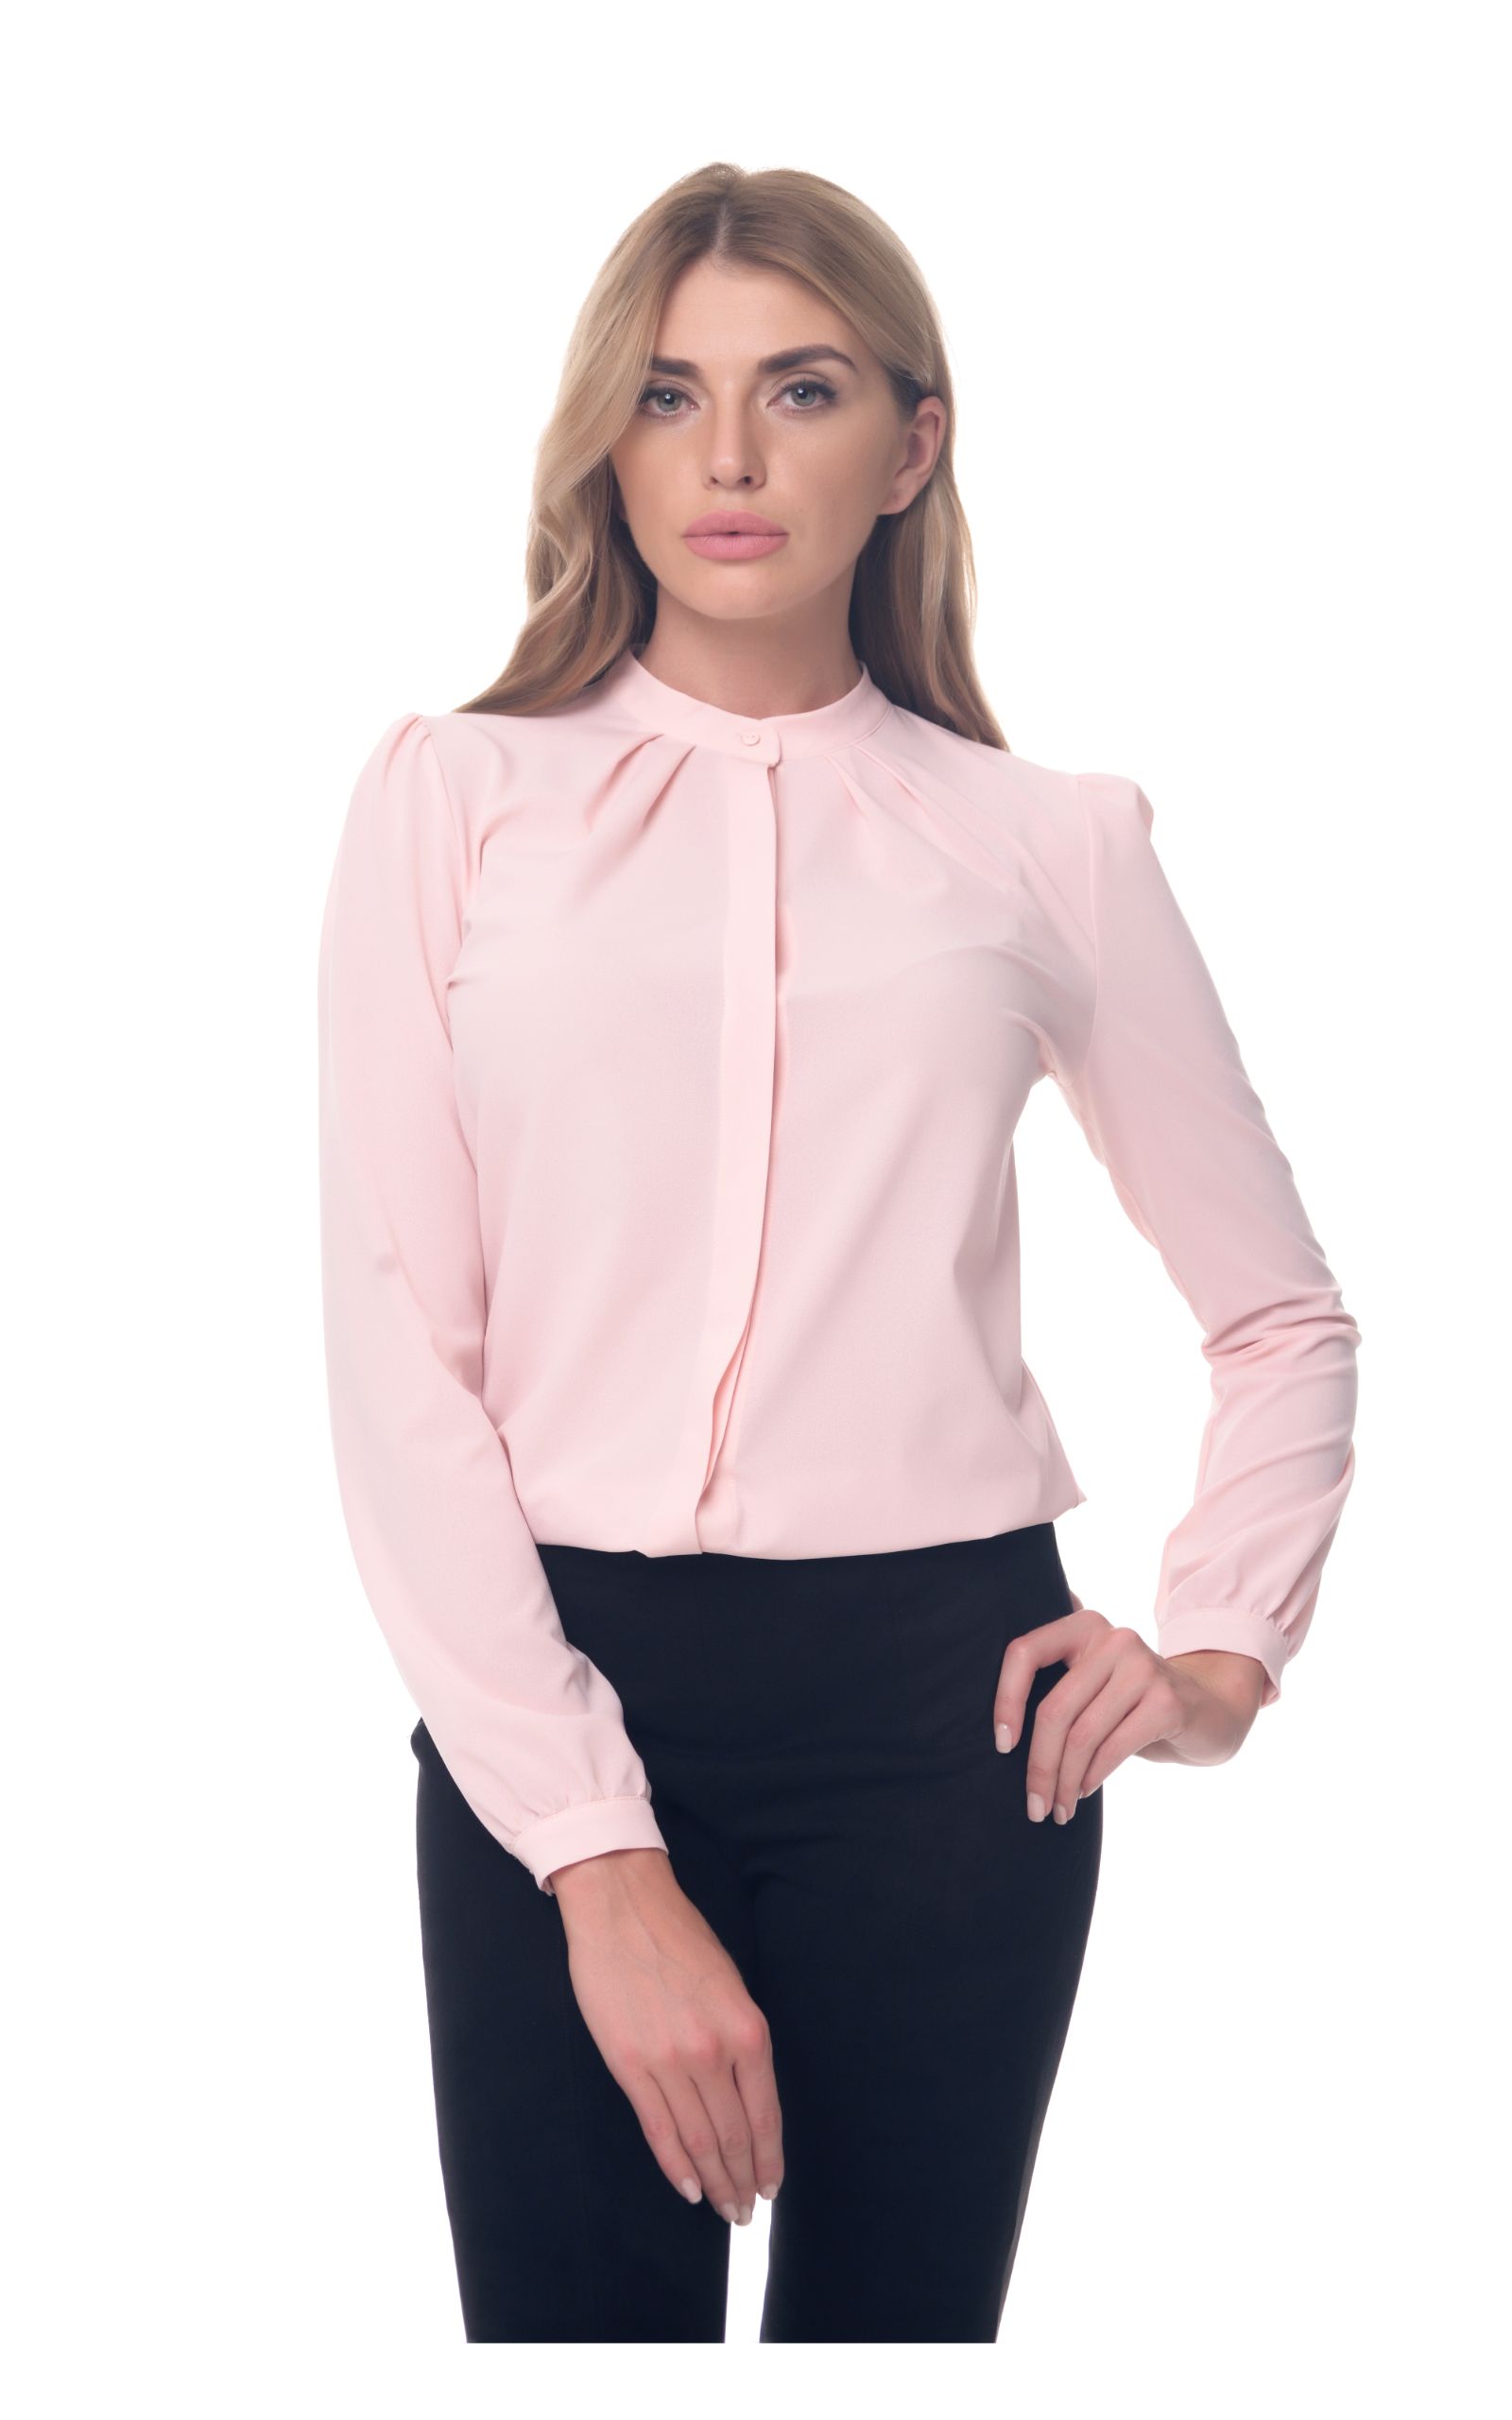 AREFEVA Bodysuit Blouse L5246 Beige Pink – UIMPERIUM